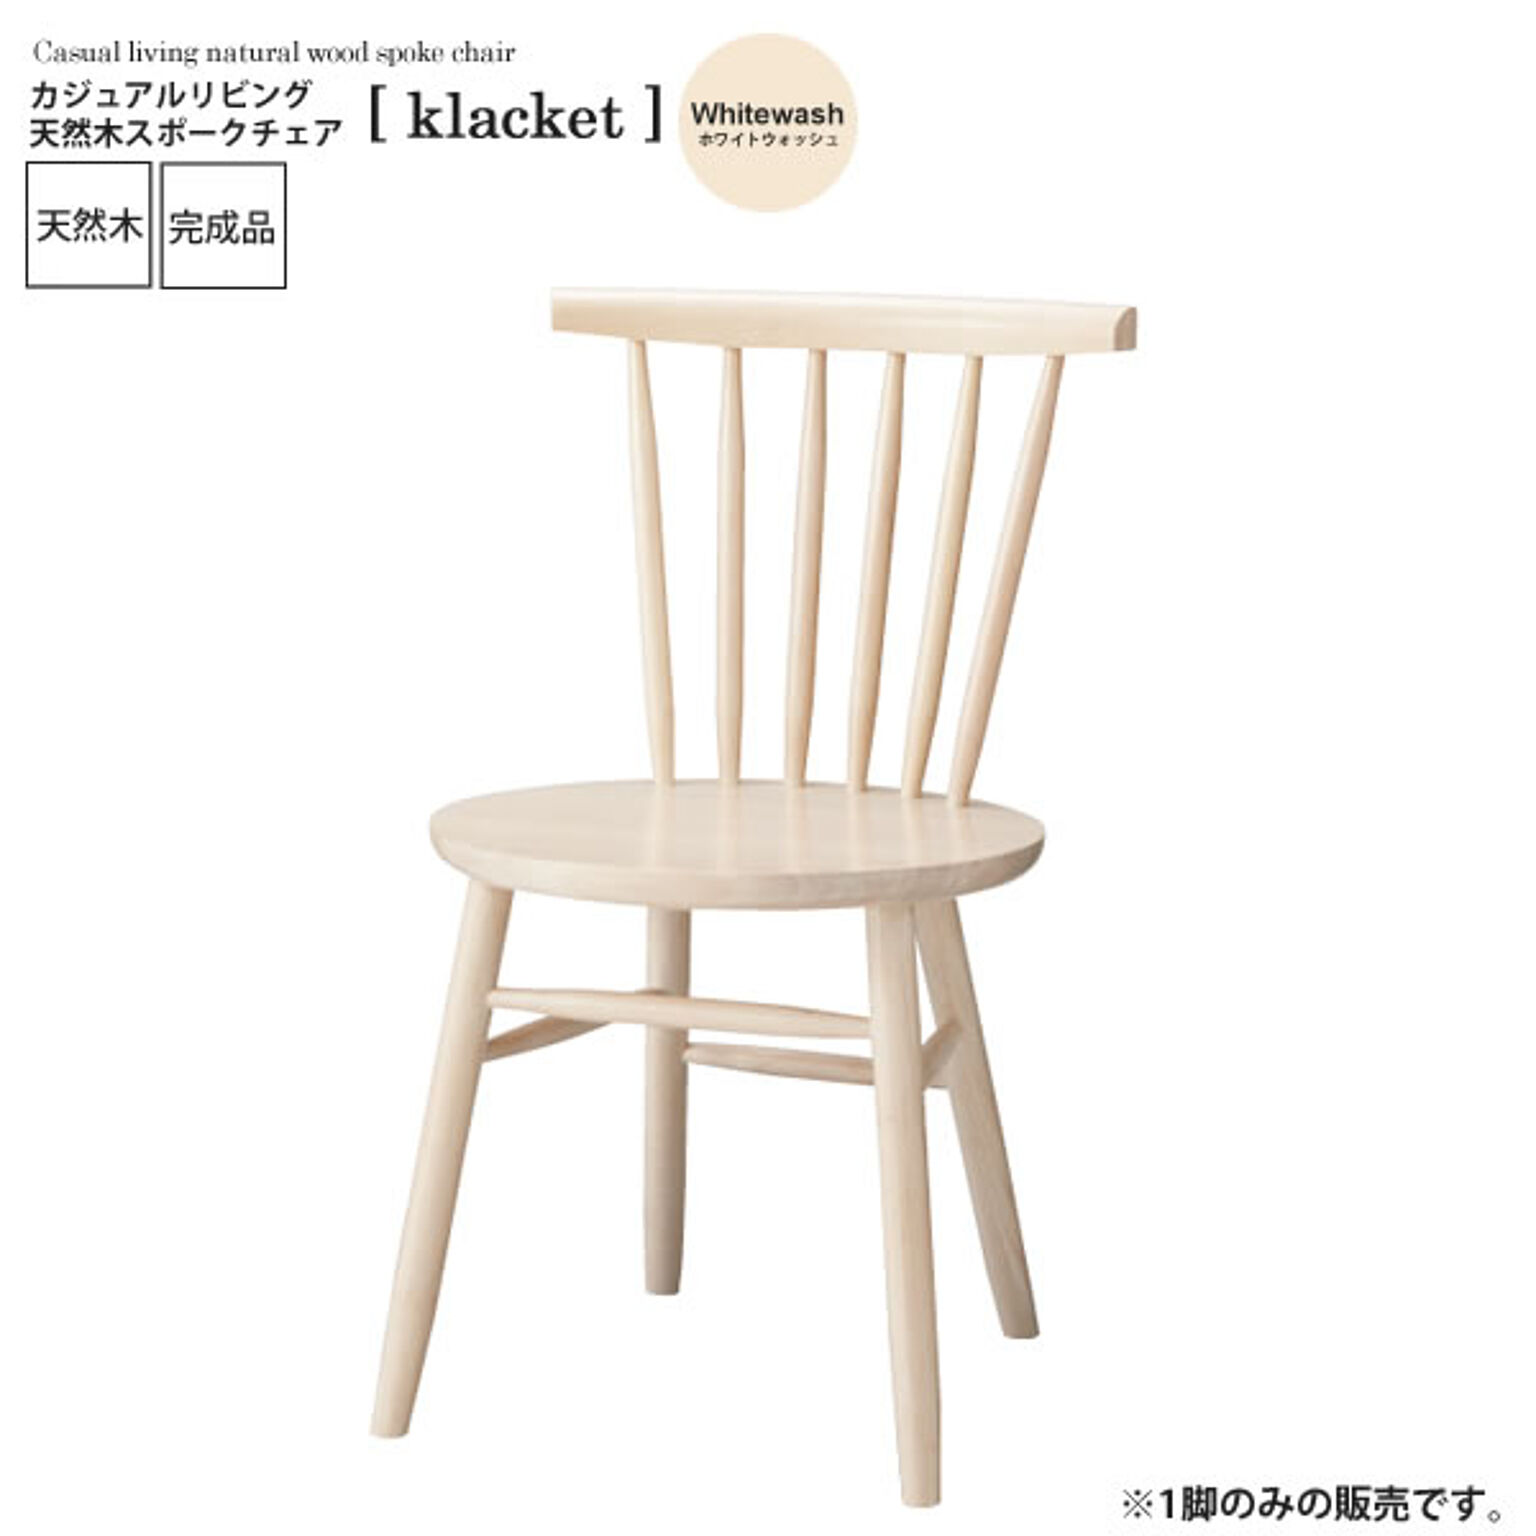 ホワイトウォッシュ ： カジュアルリビング 天然木スポークチェア【klacket】 ホワイト(white) (ナチュラル) イス 椅子 リビングチェア ワーク デスクチェア 